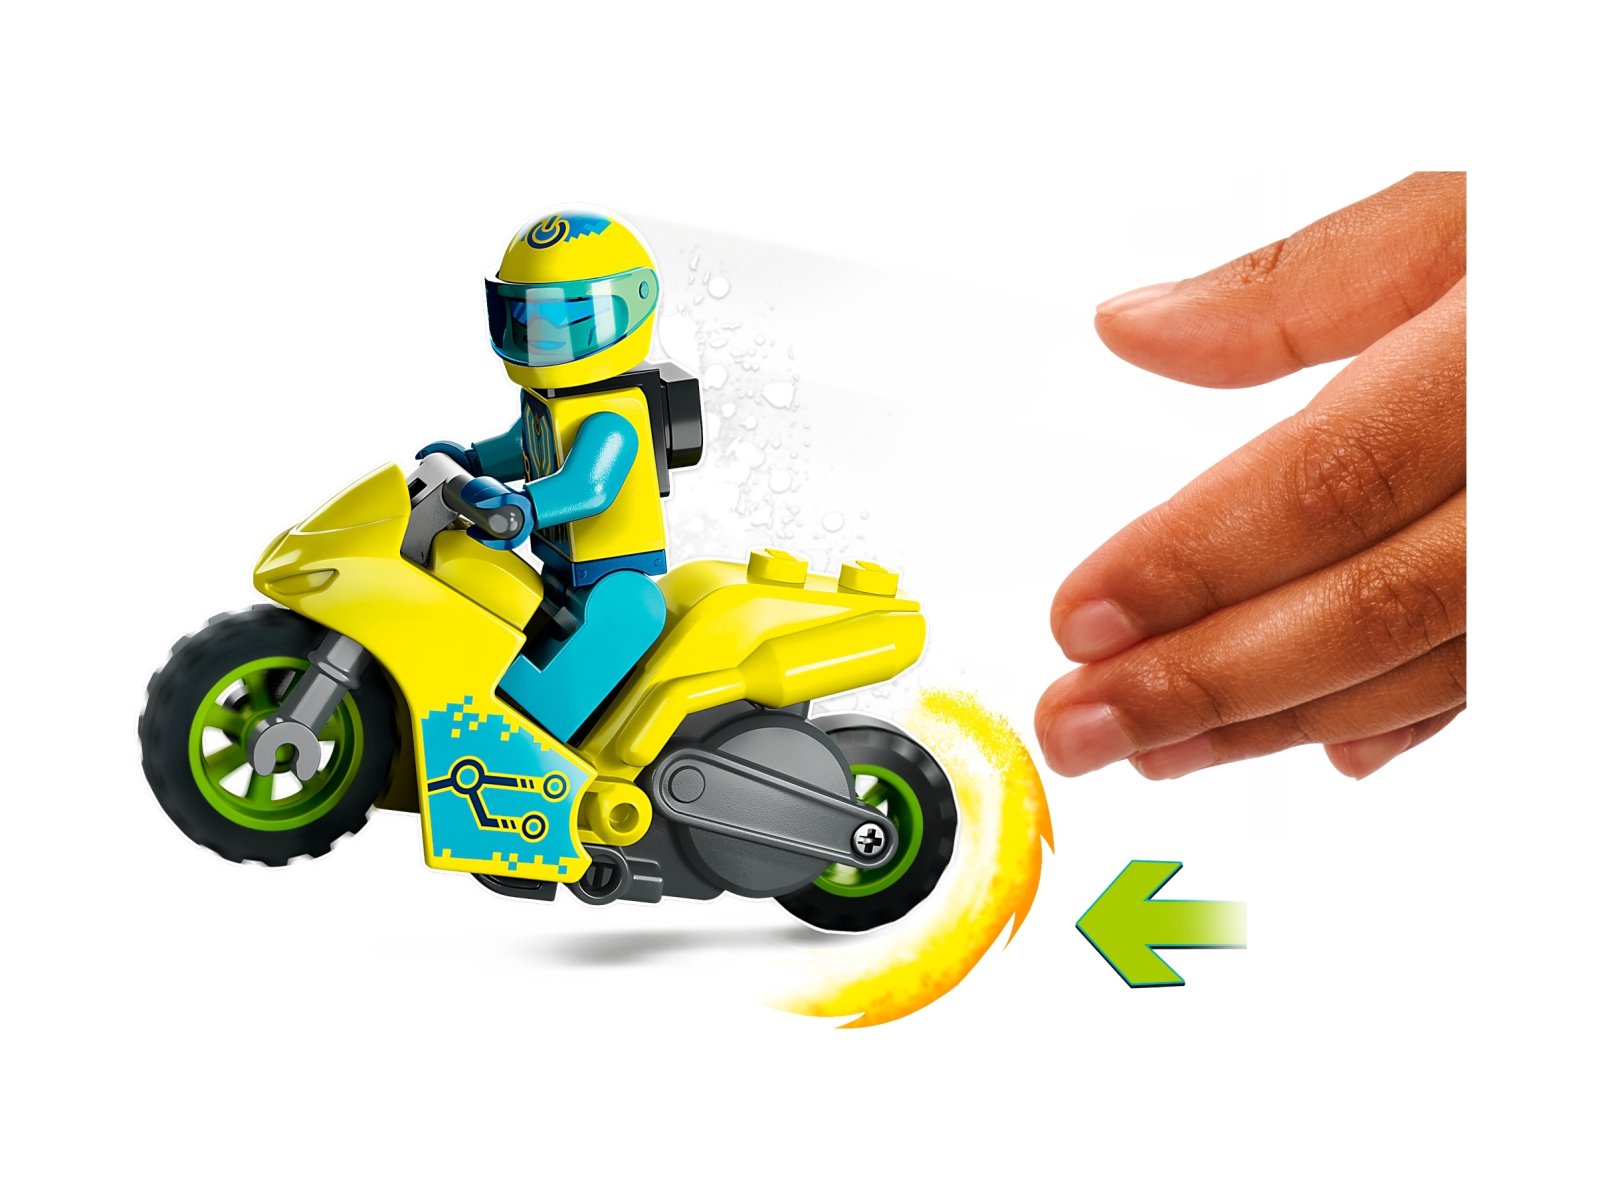 LEGO 60358 City Cybermotocykl kaskaderski